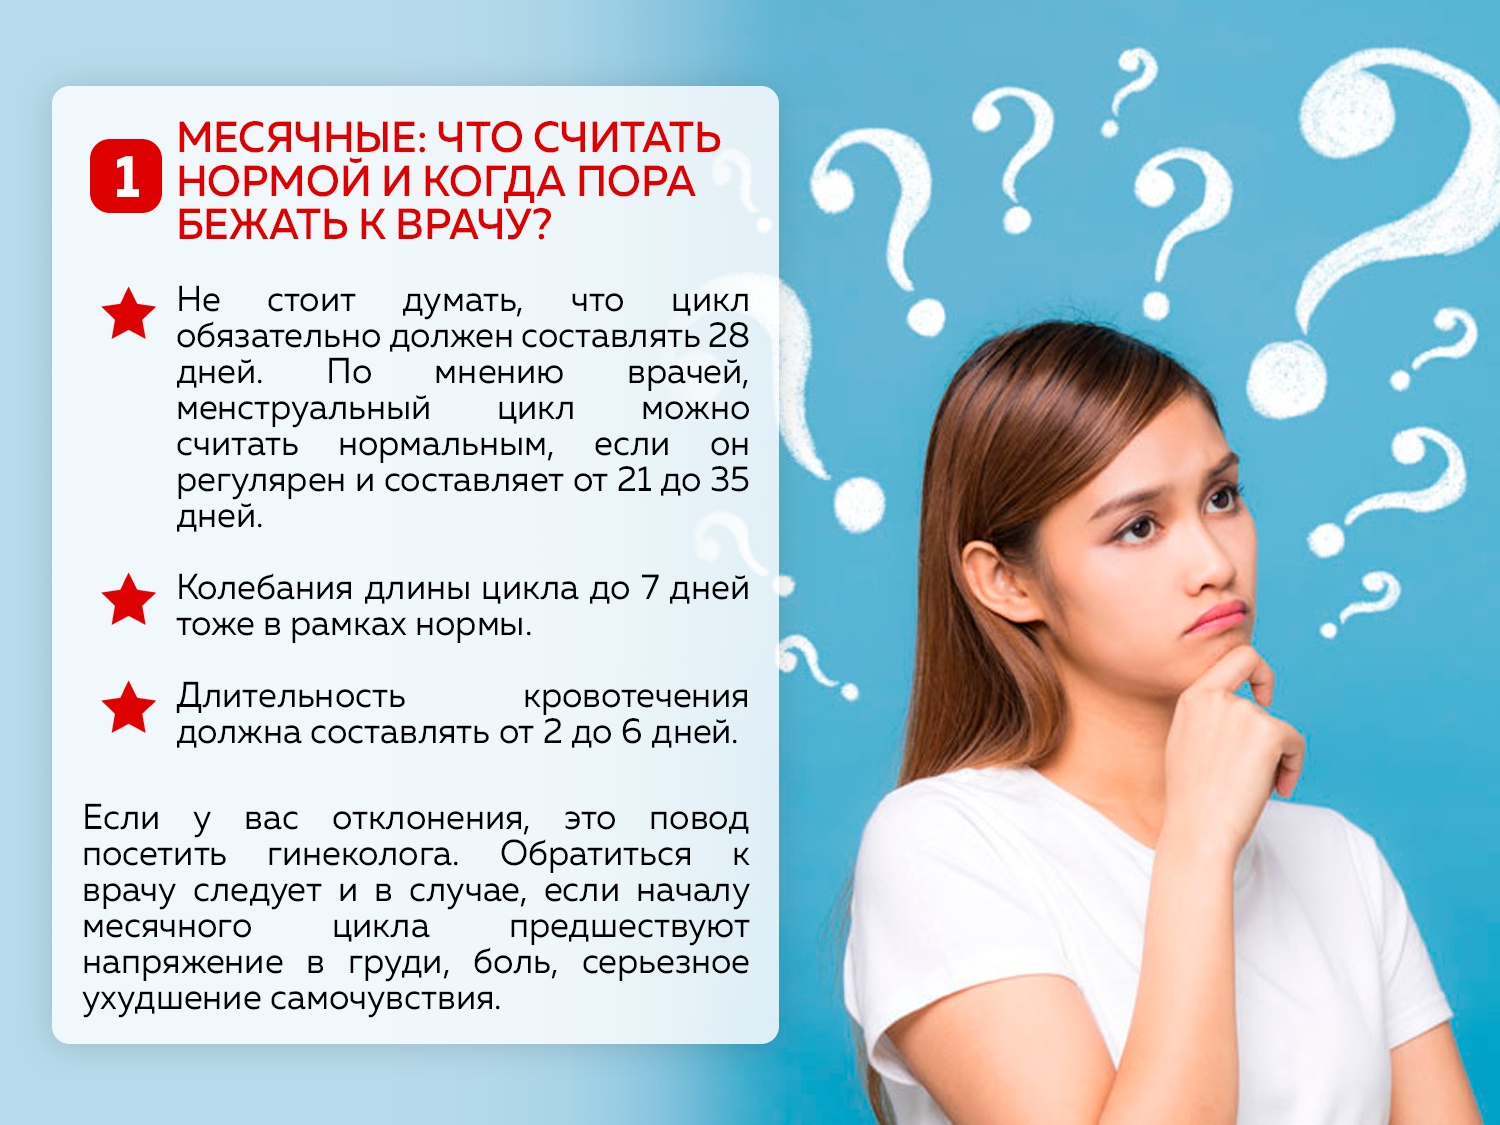 Как составить календарь косметических процедур, учитывая влияние гормонов на кожу? | портал 1nep.ru